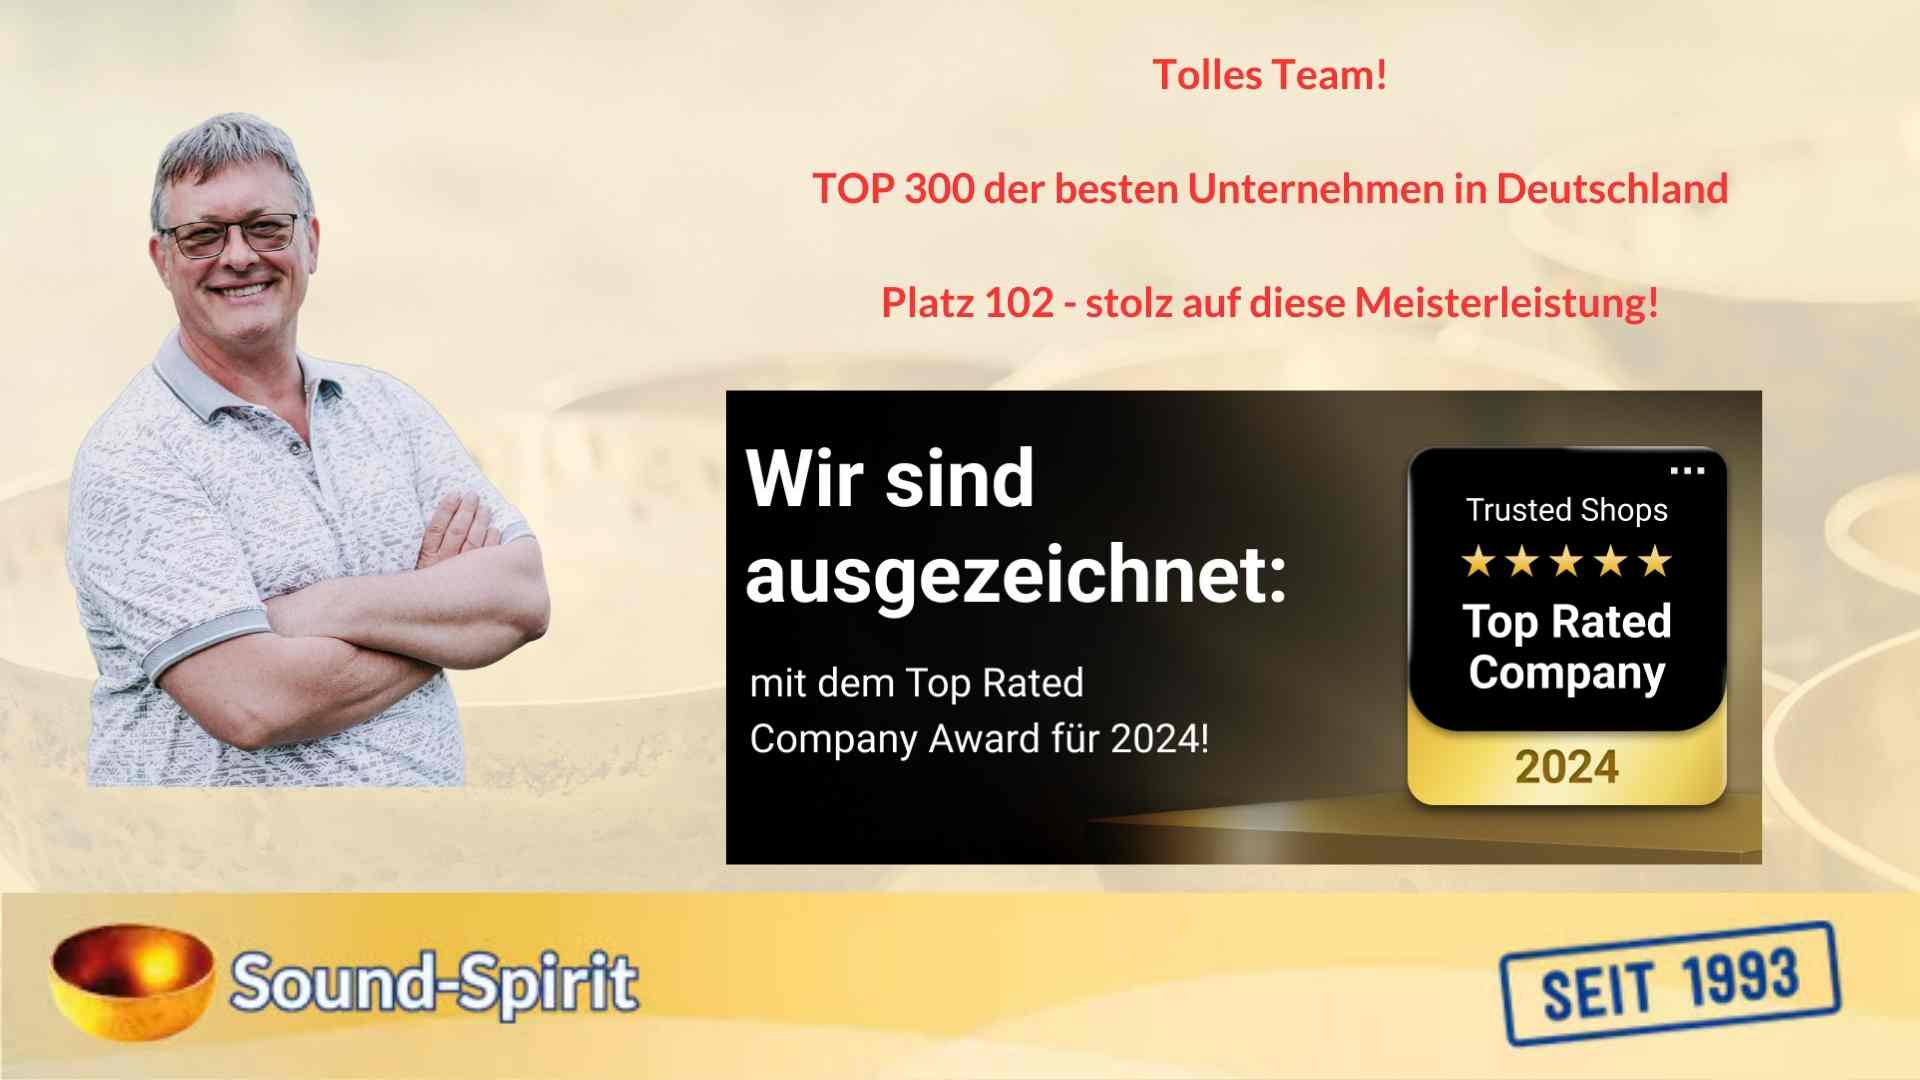 Tolles Team! TOP 300 der besten Unternehmen in Deutschland